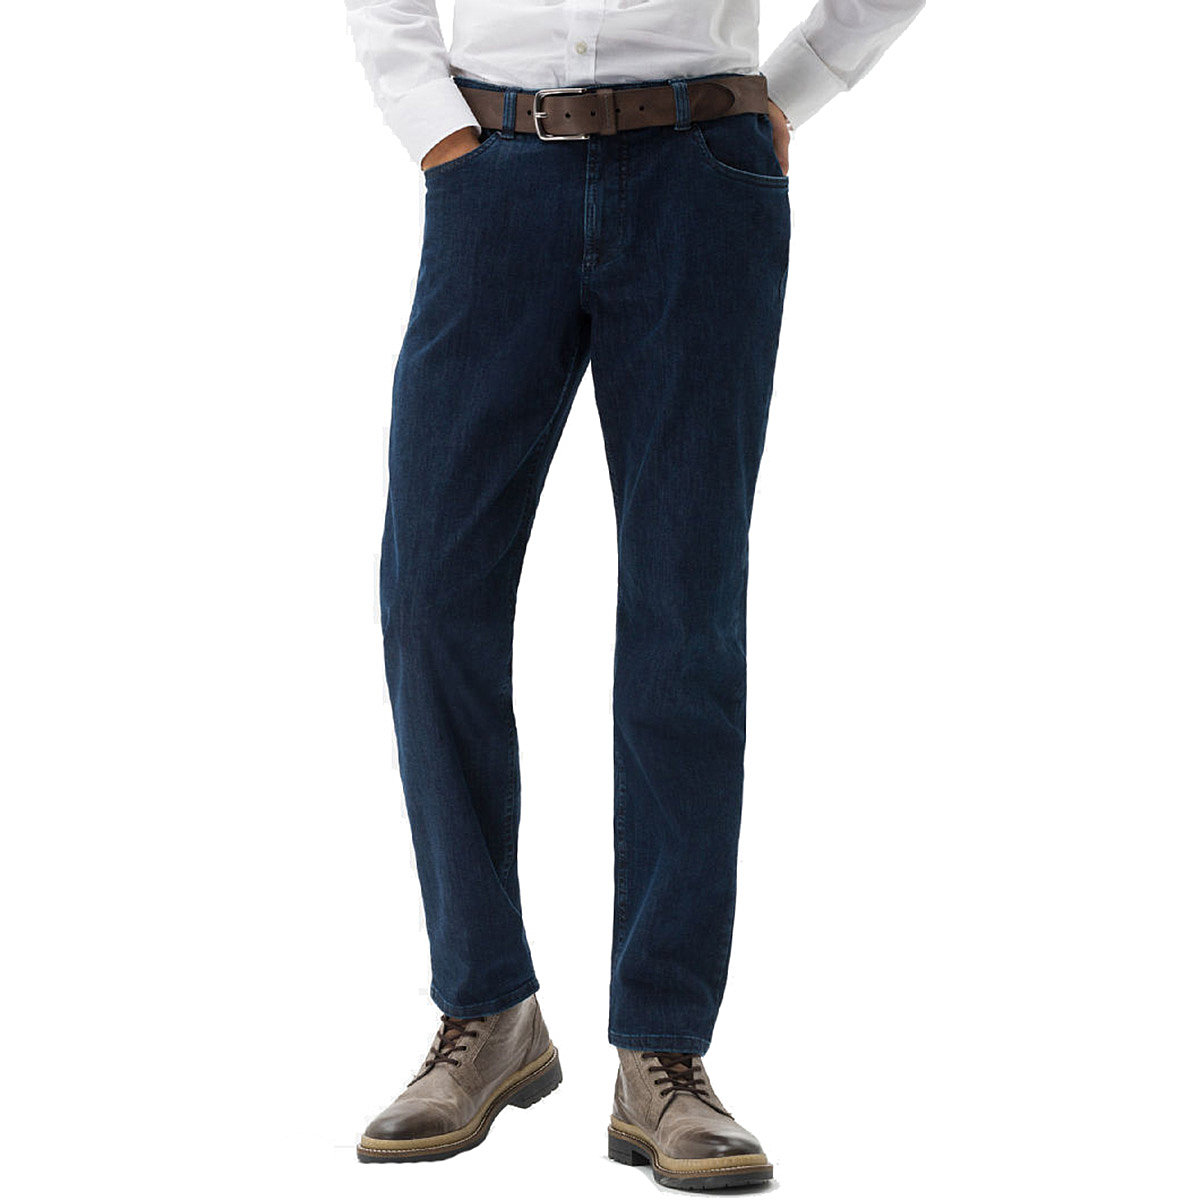 Eurex bei Brax | Männermode Kurzleib | Blau 5-Pocket, | Highstretch-Jeans Größenspezialist 